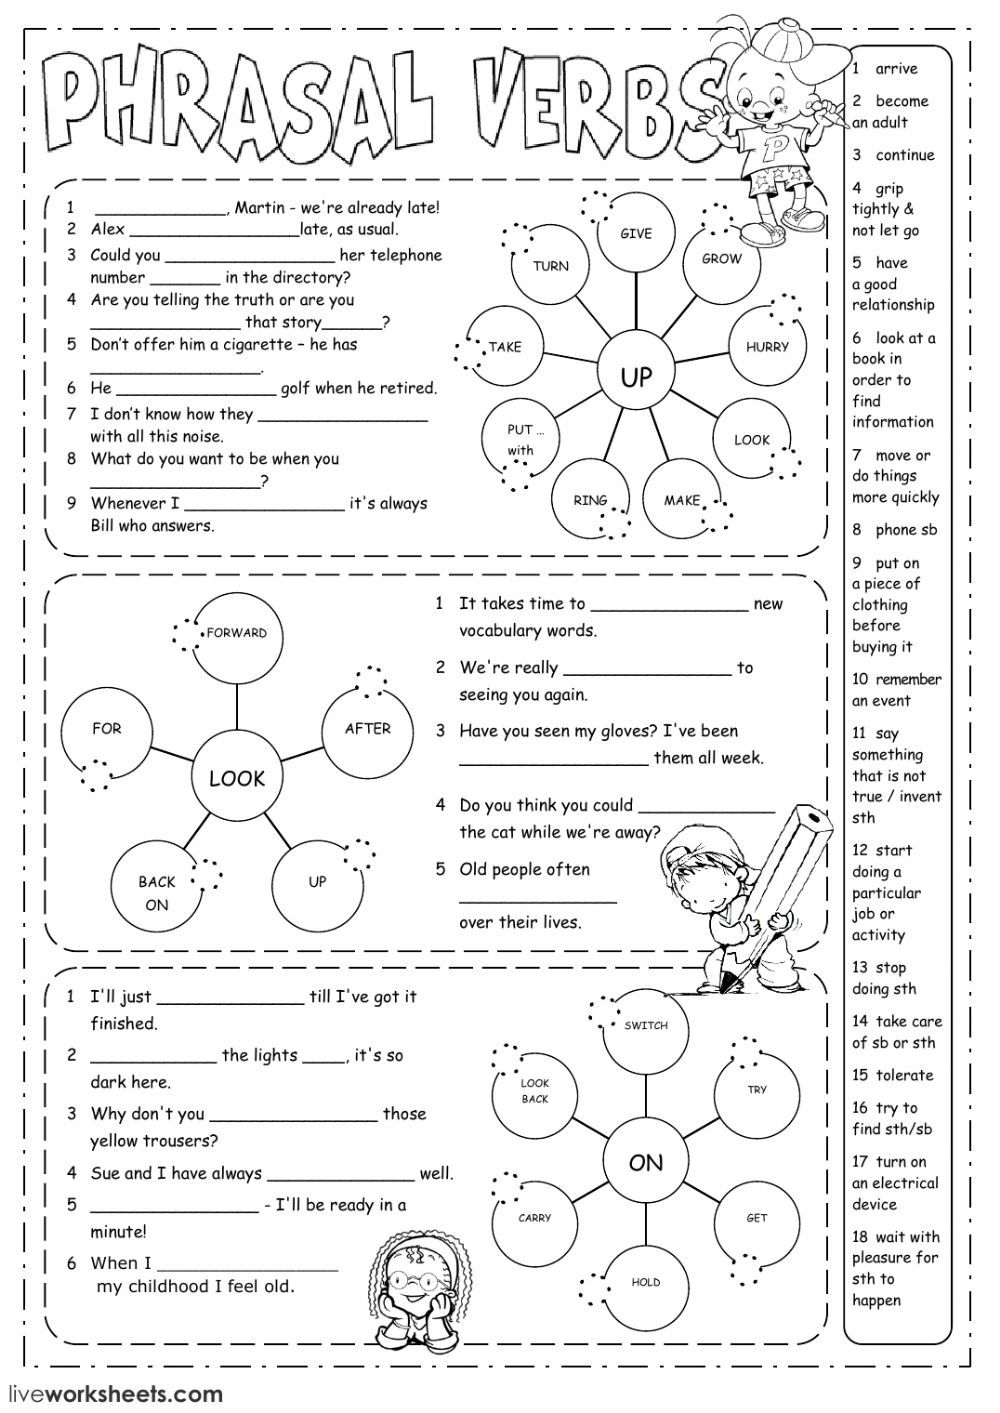 phrasal verbs worksheet pdf